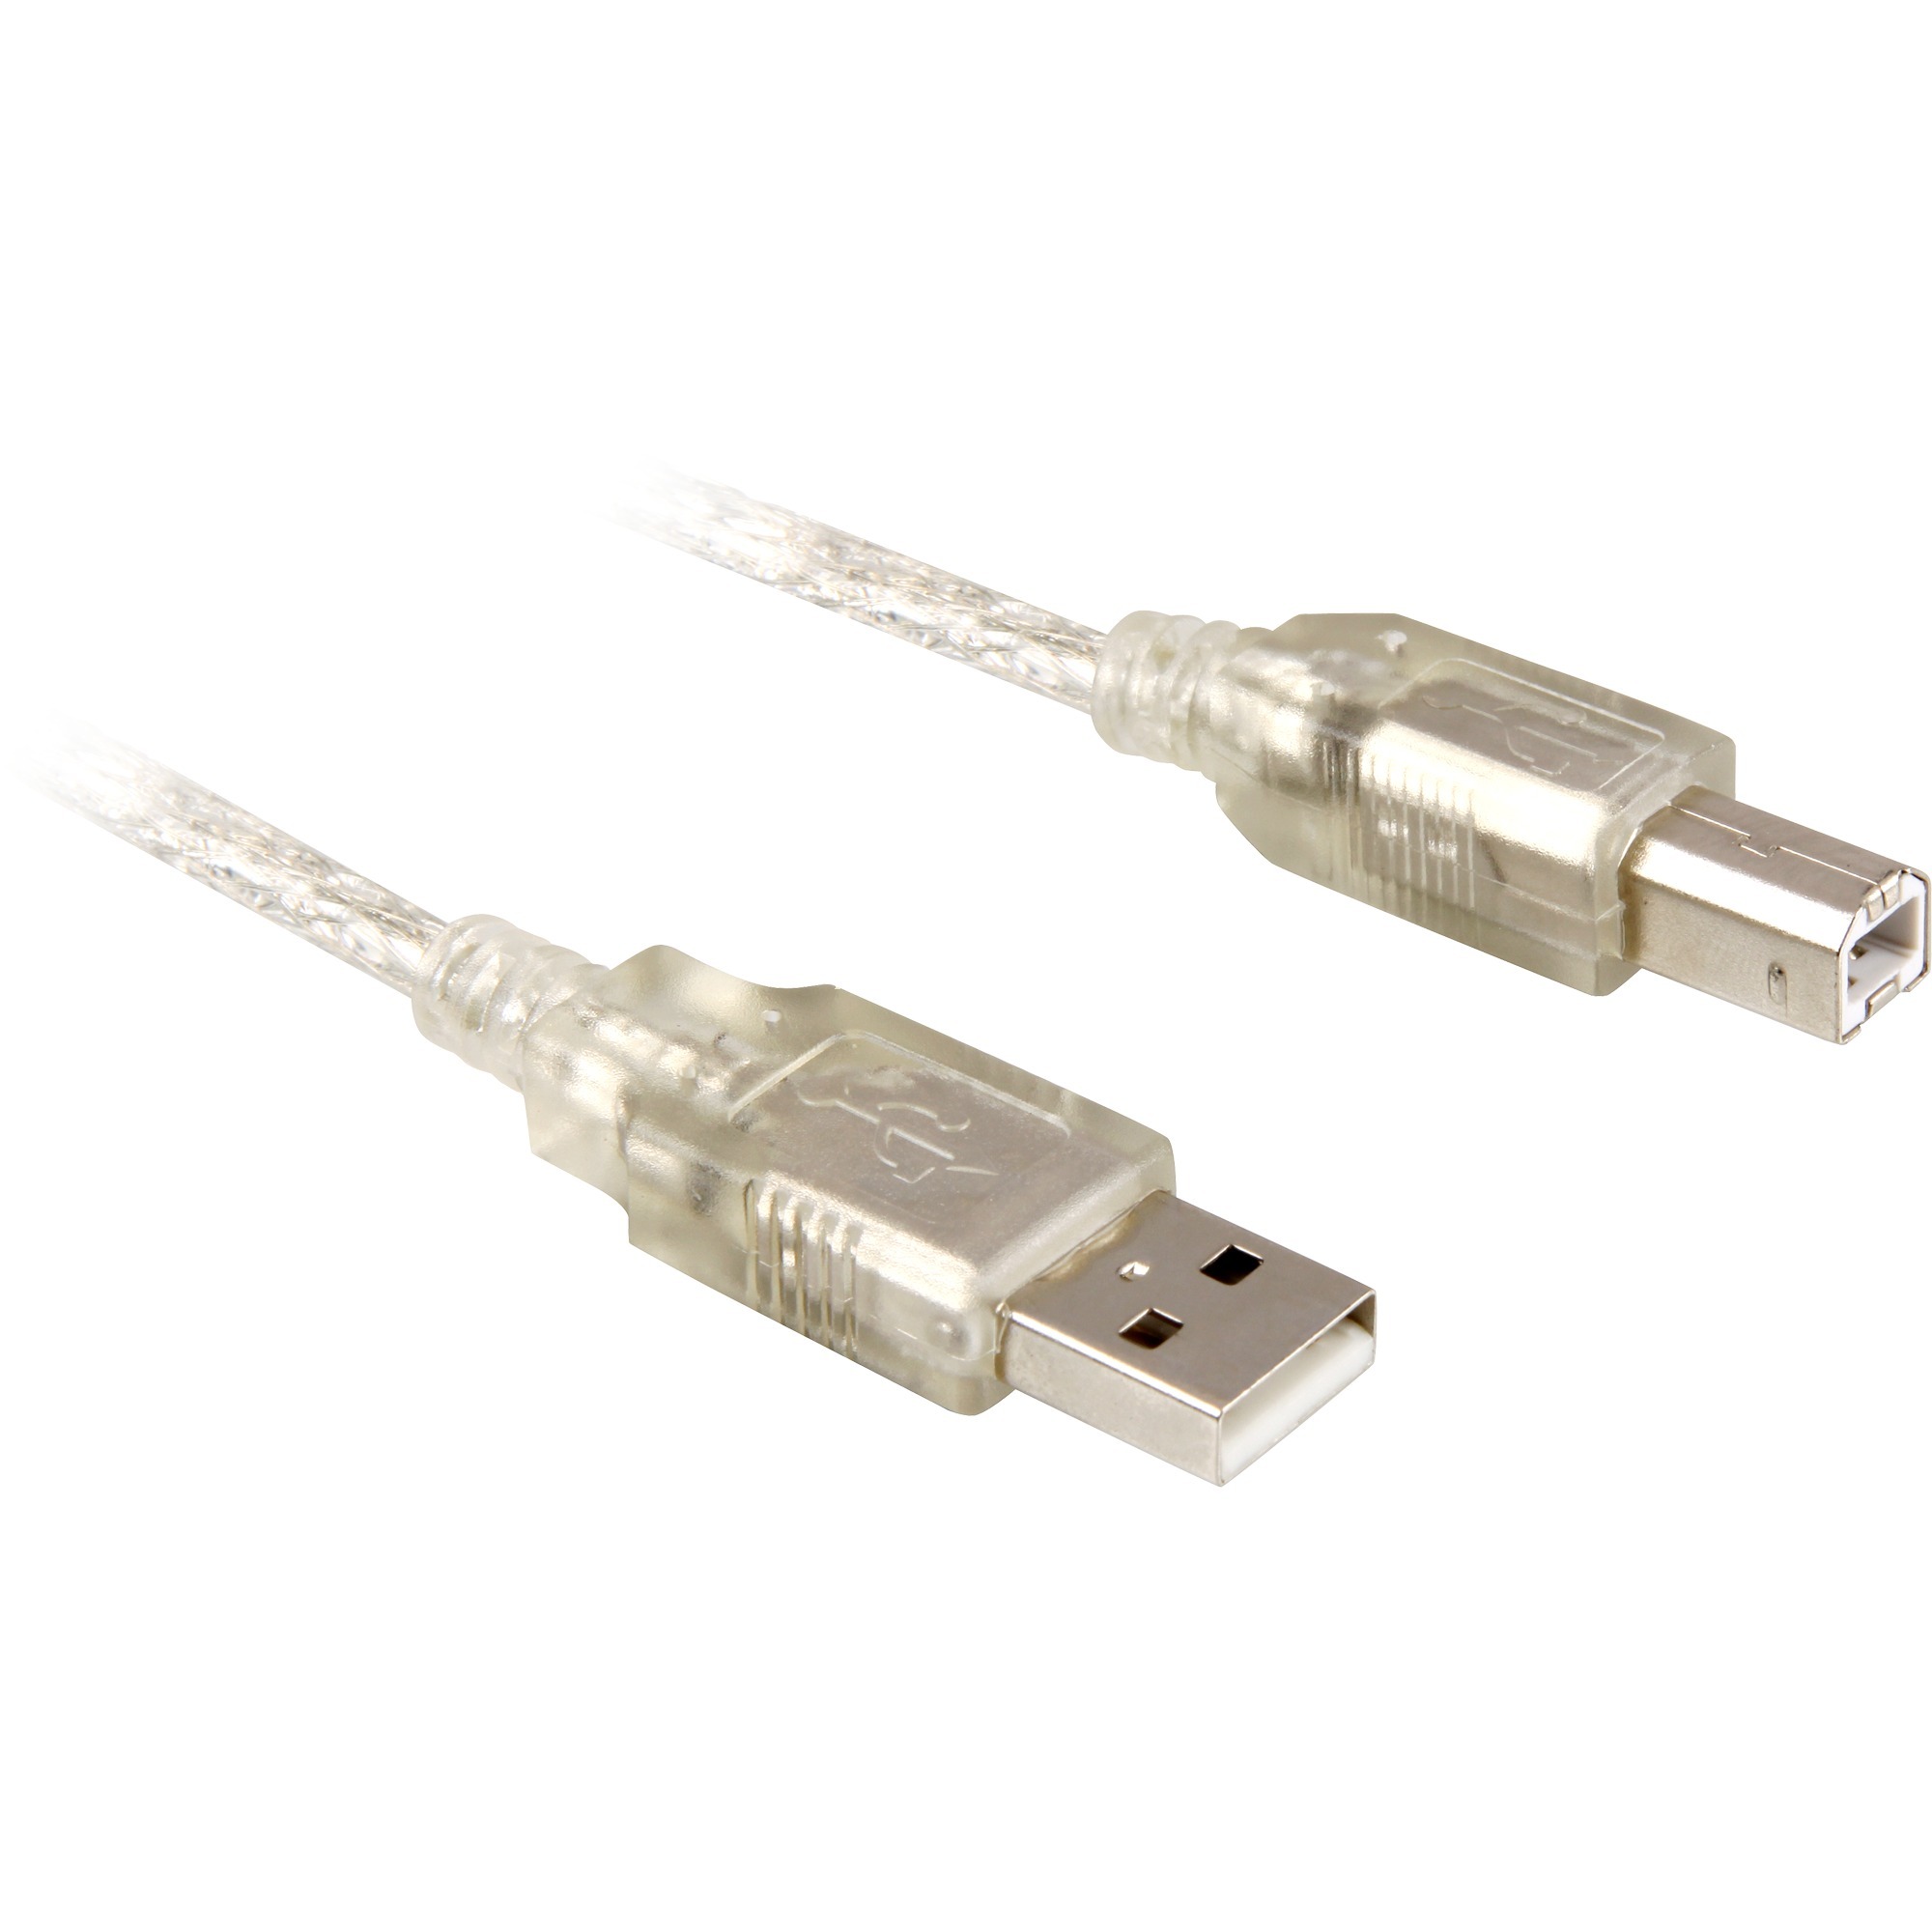 Image of Alternate - Kabel USB 2.0 A-B upstream online einkaufen bei Alternate